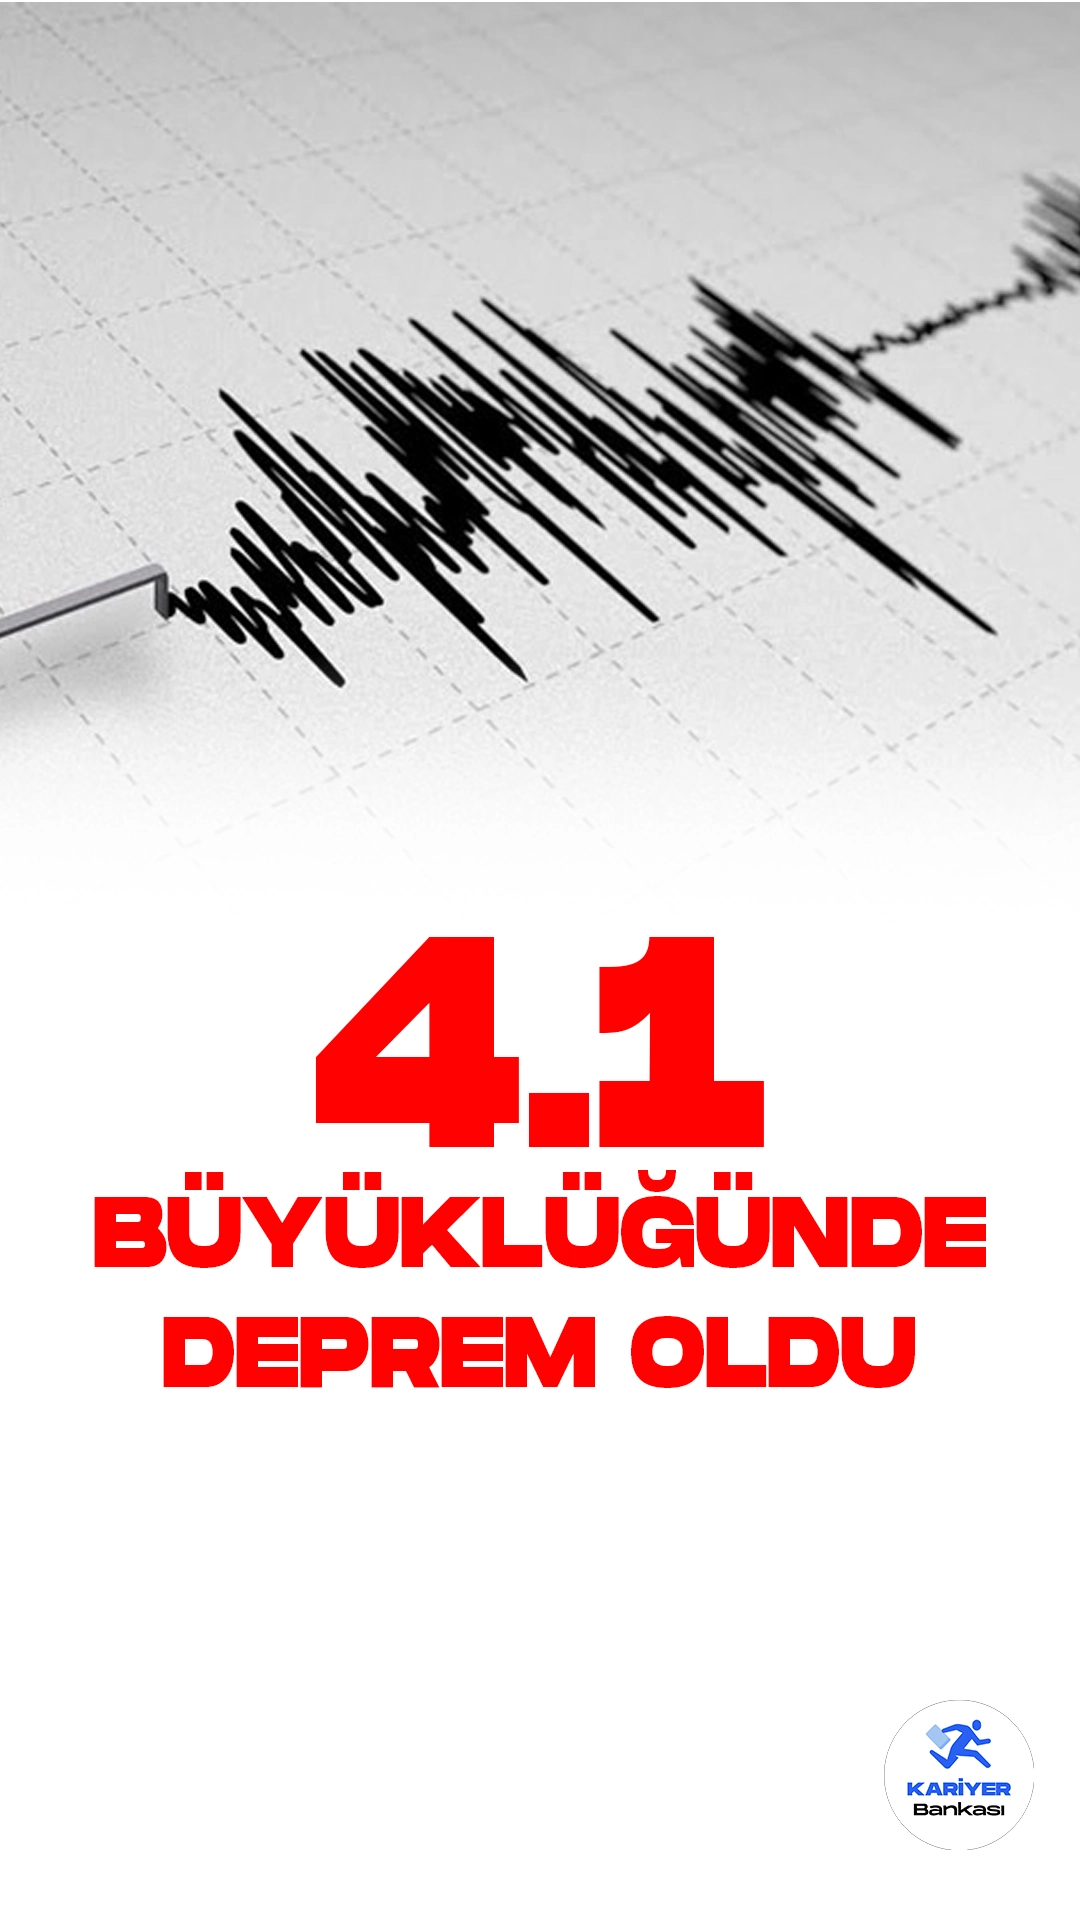 Adıyaman'da 4.1 Büyüklüğünde Deprem Oldu. İçişleri Bakanlığı Afet ve Acil Durum Yönetimi Başkanlığı (AFAD) resmi sayfasından yayımlanan son dakika duyurusuna göre, Adıyaman'ın Gölbaşı ilçesinde 4.1 büyüklüğünde deprem meydana geldi.